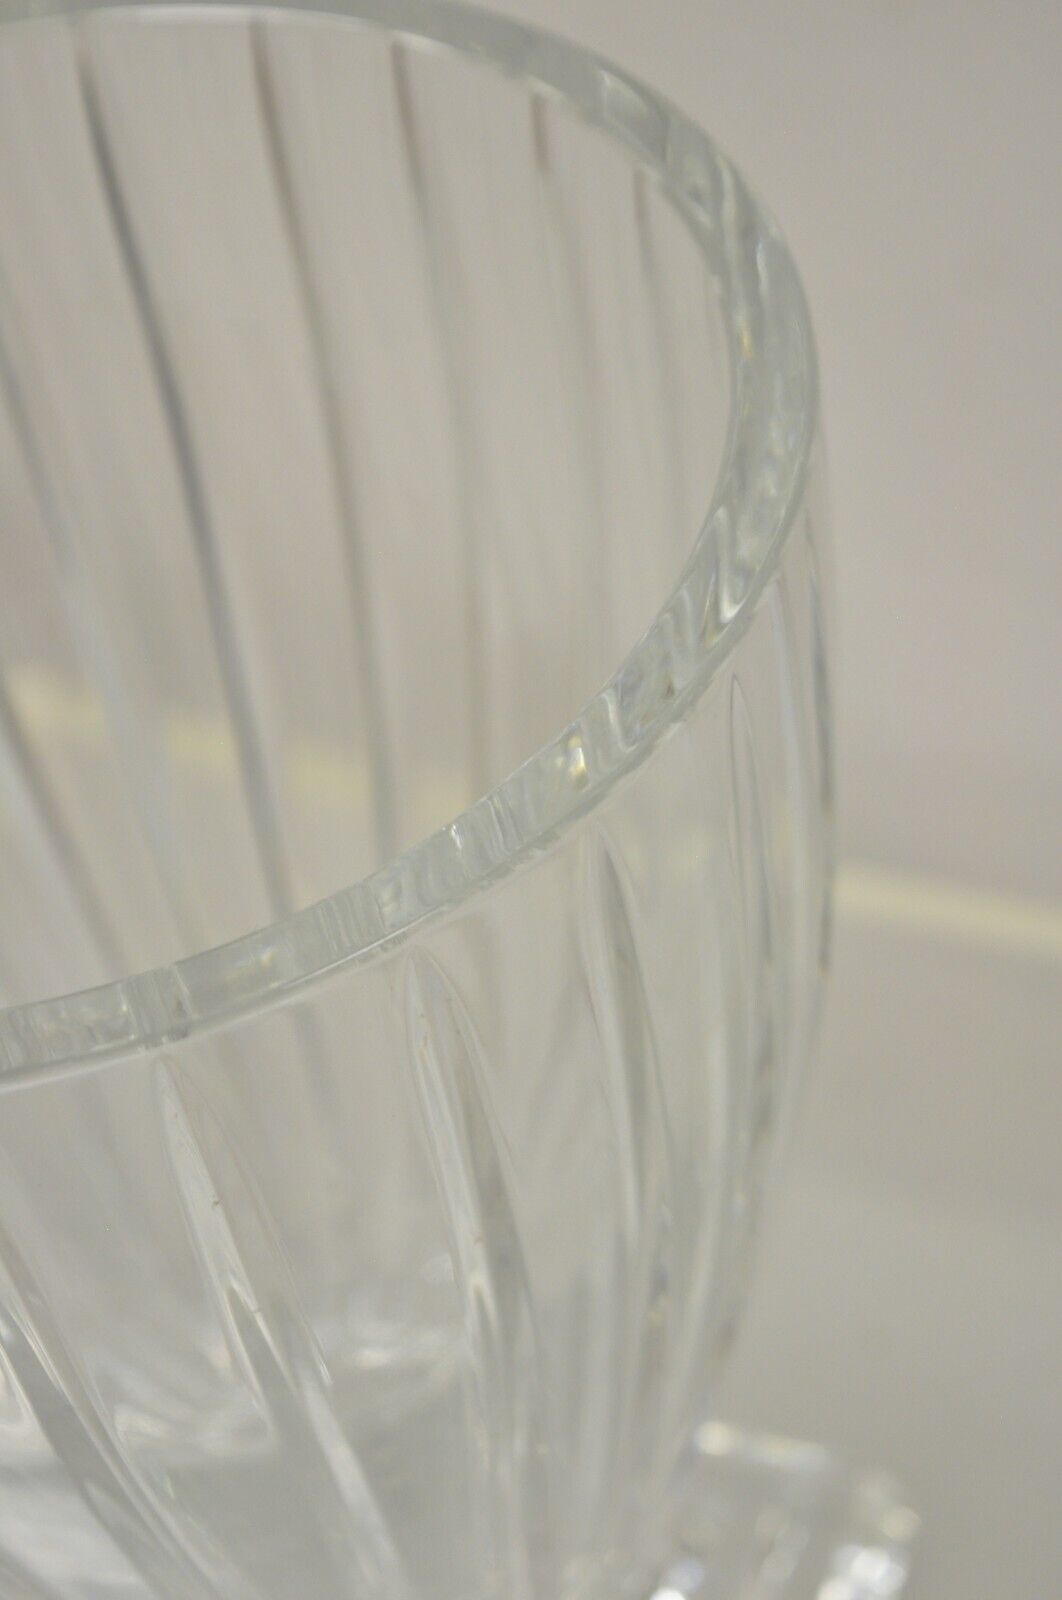 Vintage Lead Crystal Glass 12" Fluted Flower Vase Poland